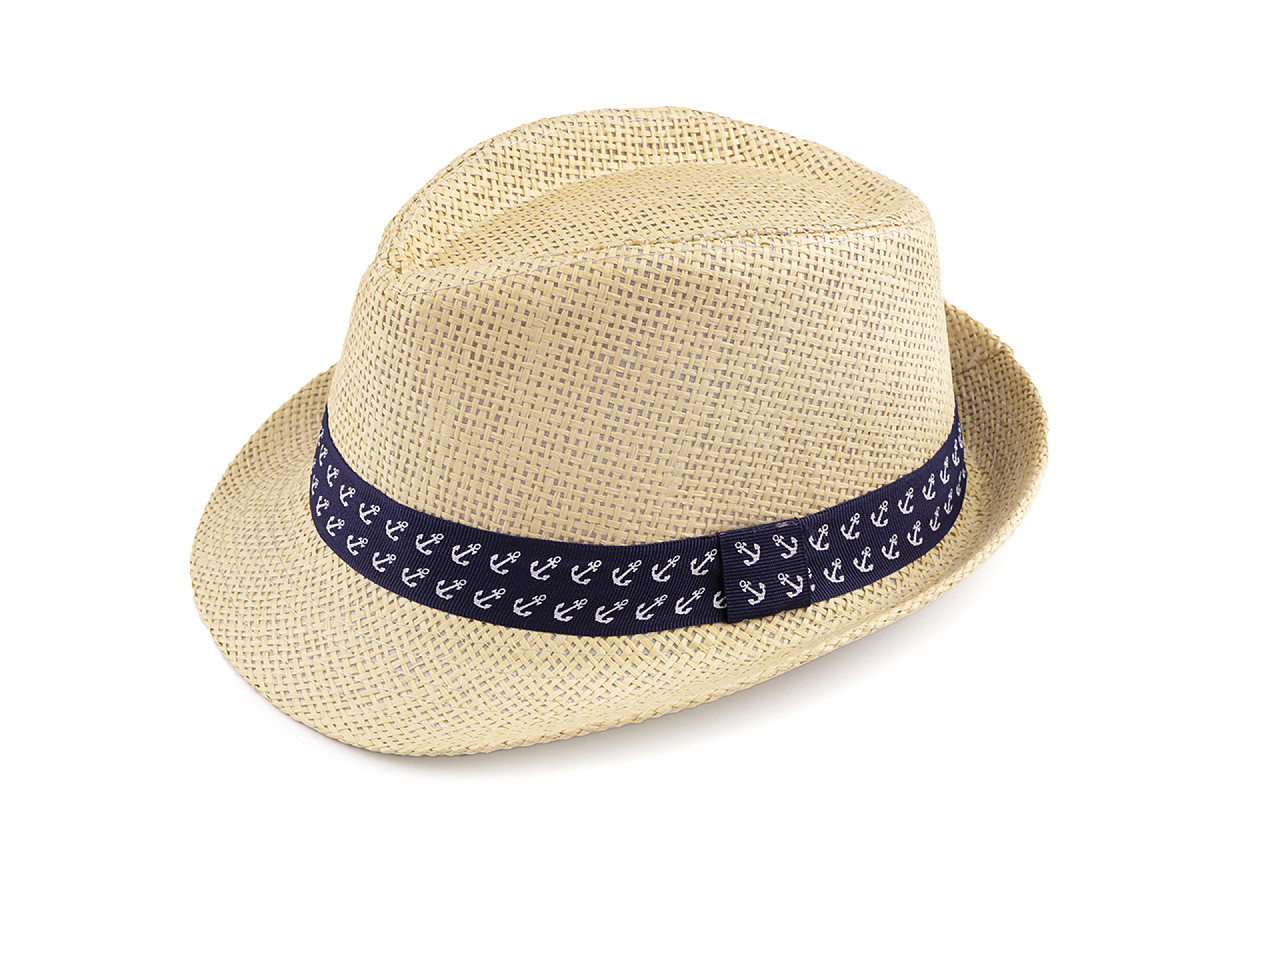 Dětský letní klobouk / slamák, barva 15 (54 cm) přírodní